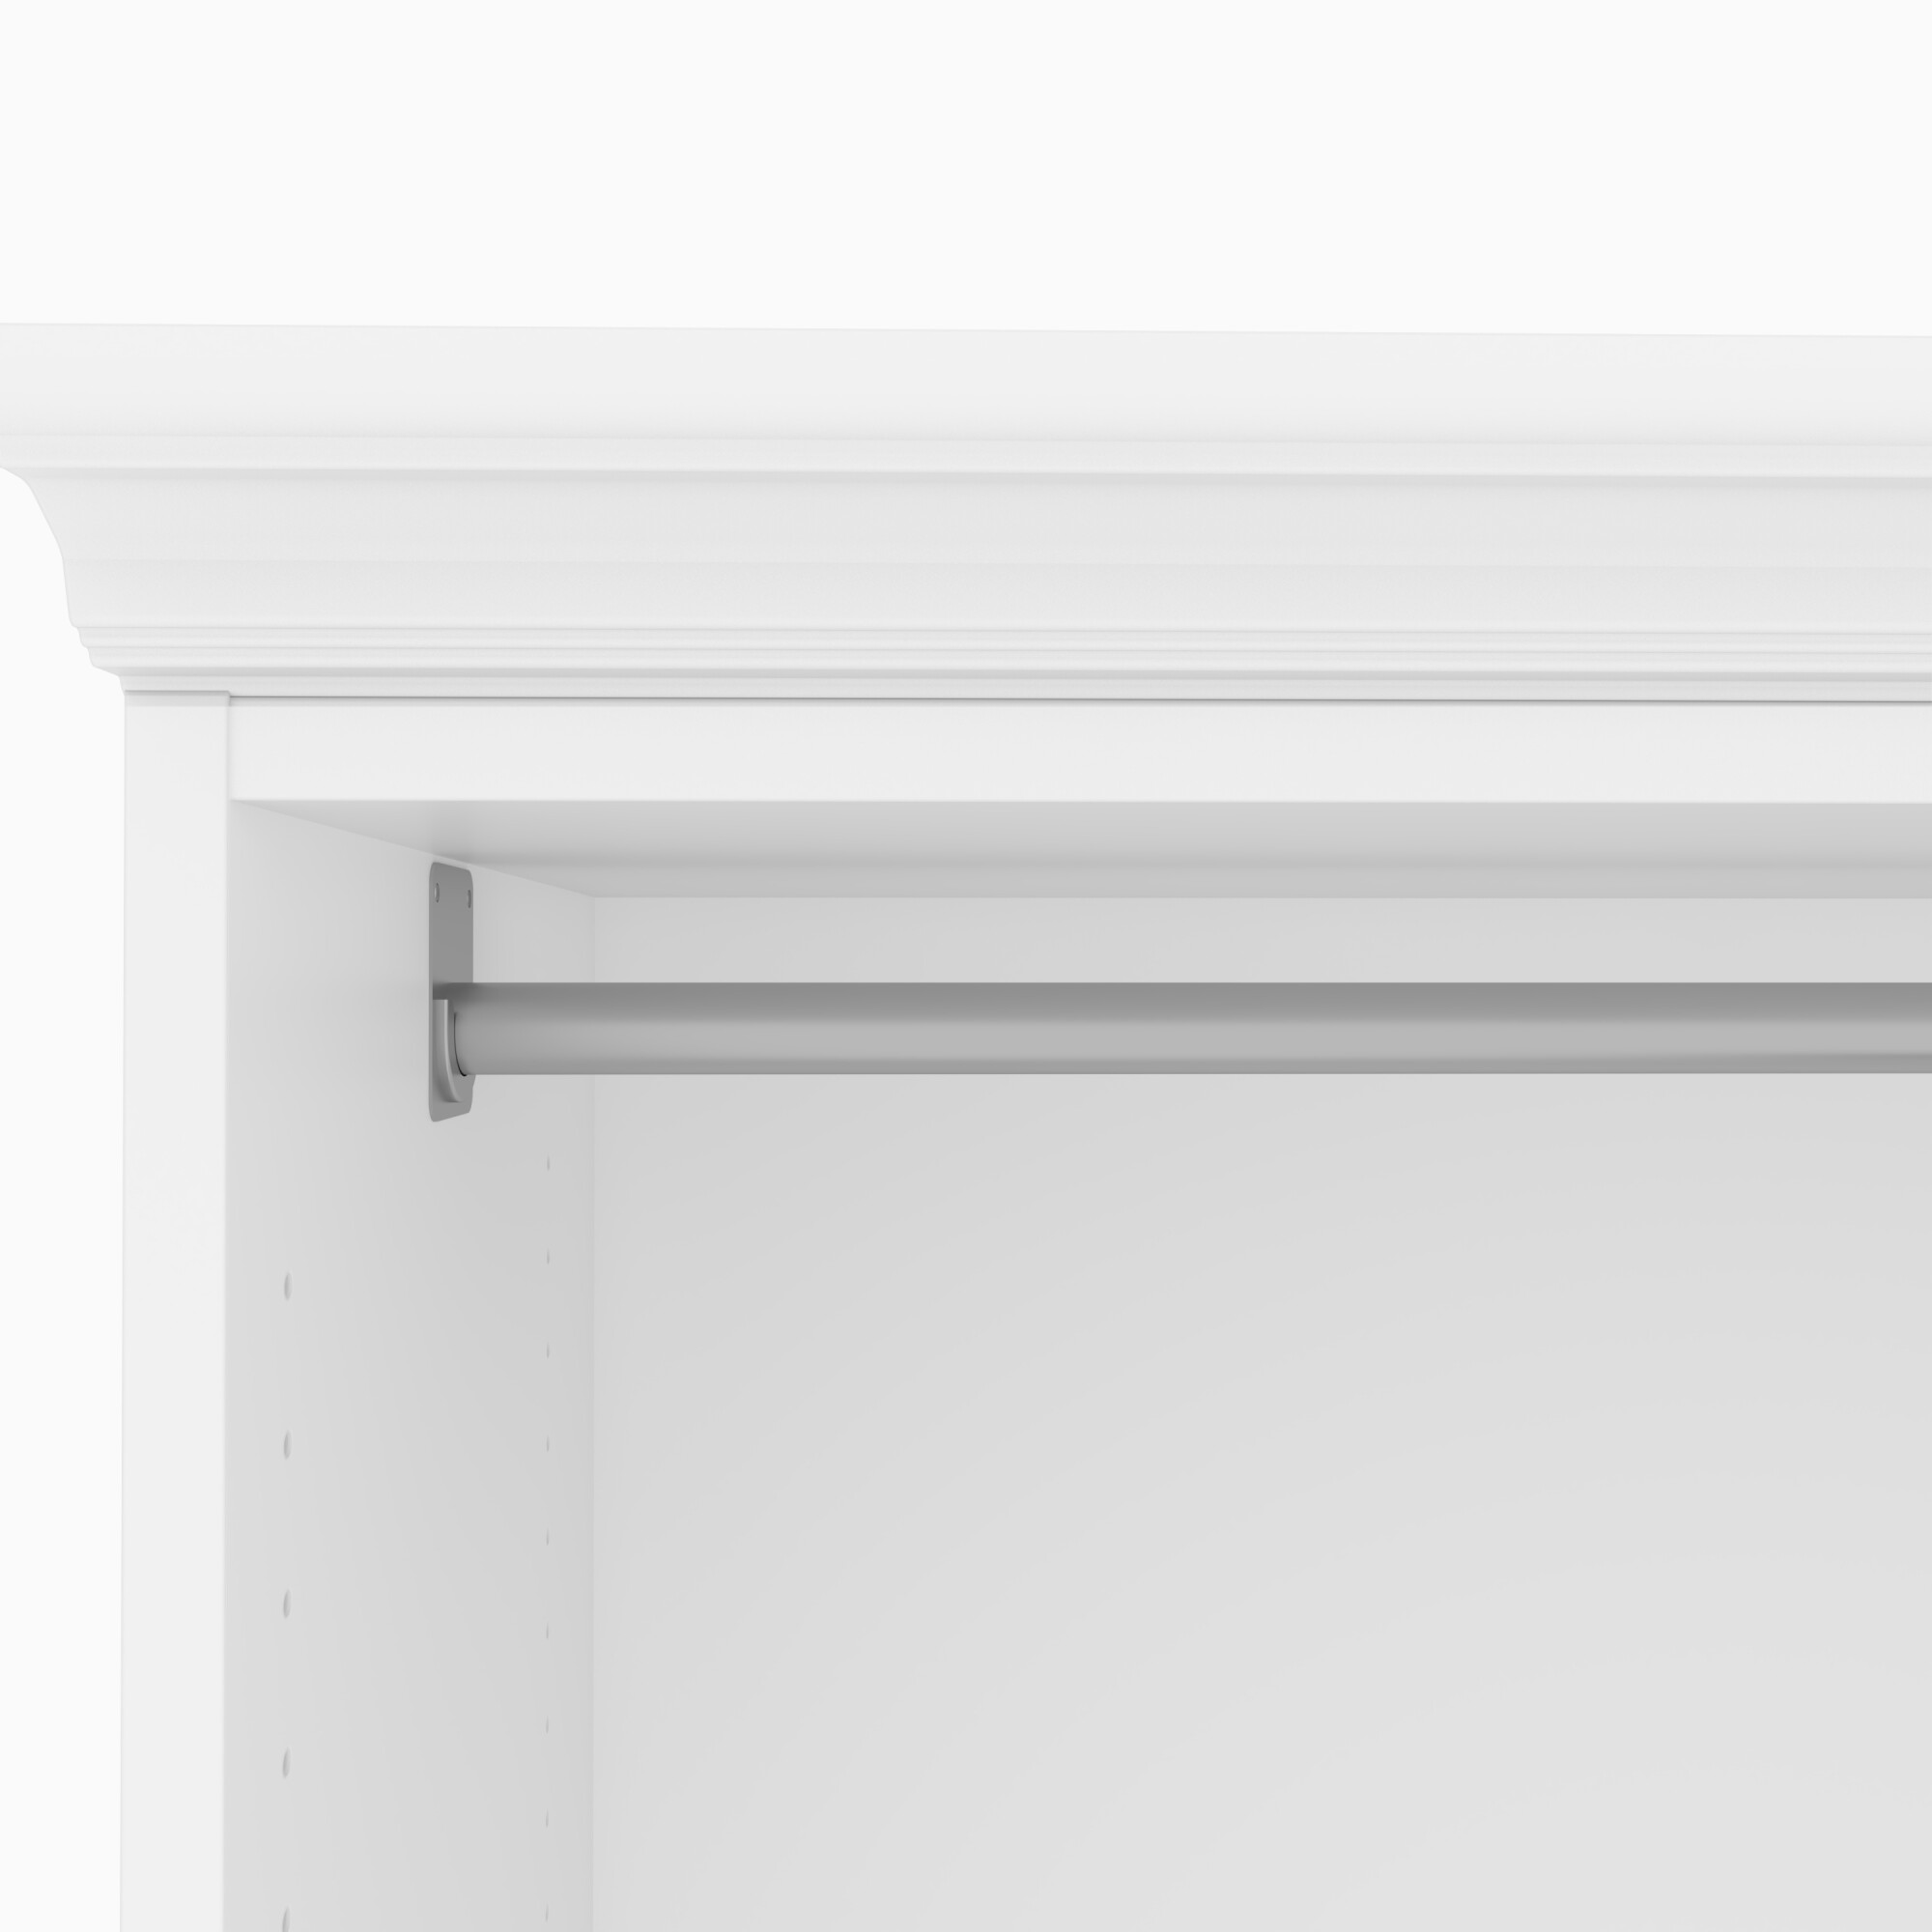 https://www.homethreads.com/files/bestar/40870-17-bestar-versatile-61r-closet-organizer-with-drawers-in-white-10.jpg